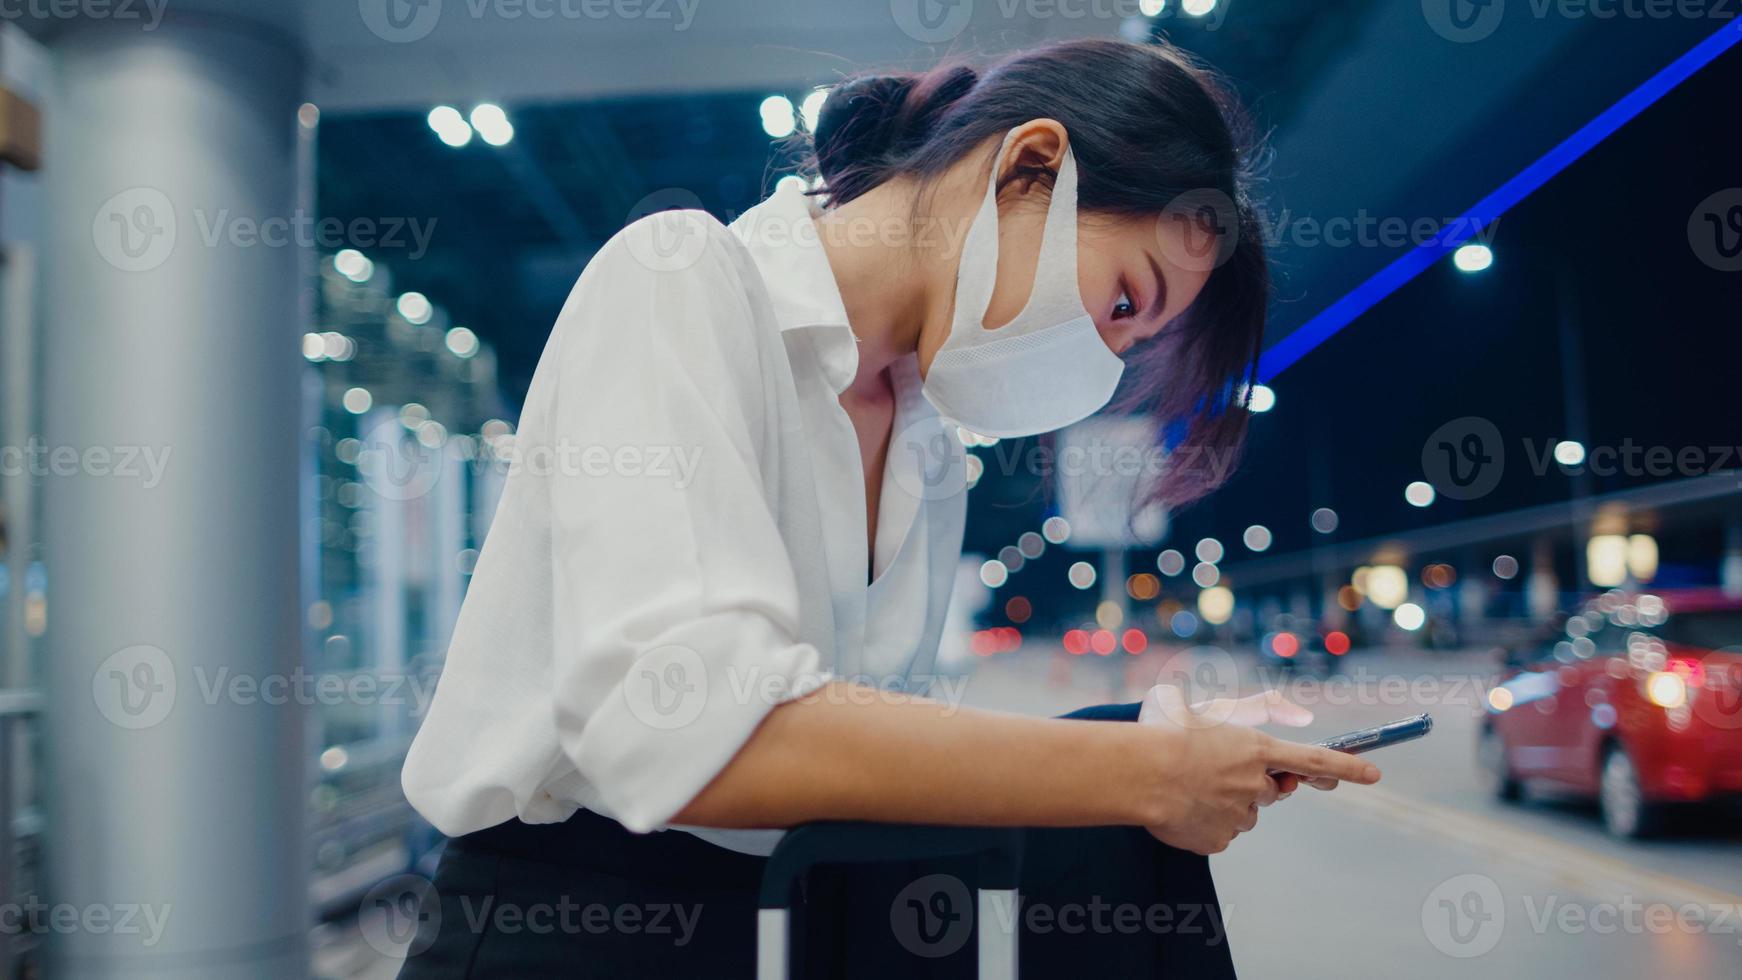 asiatisk affärsflicka anländer destination bär ansiktsmask stå utanför titta smart telefon vänta bilterminal på inrikes flygplats. affärspendlare covid -pandemi, affärsresor social distanseringskoncept. foto